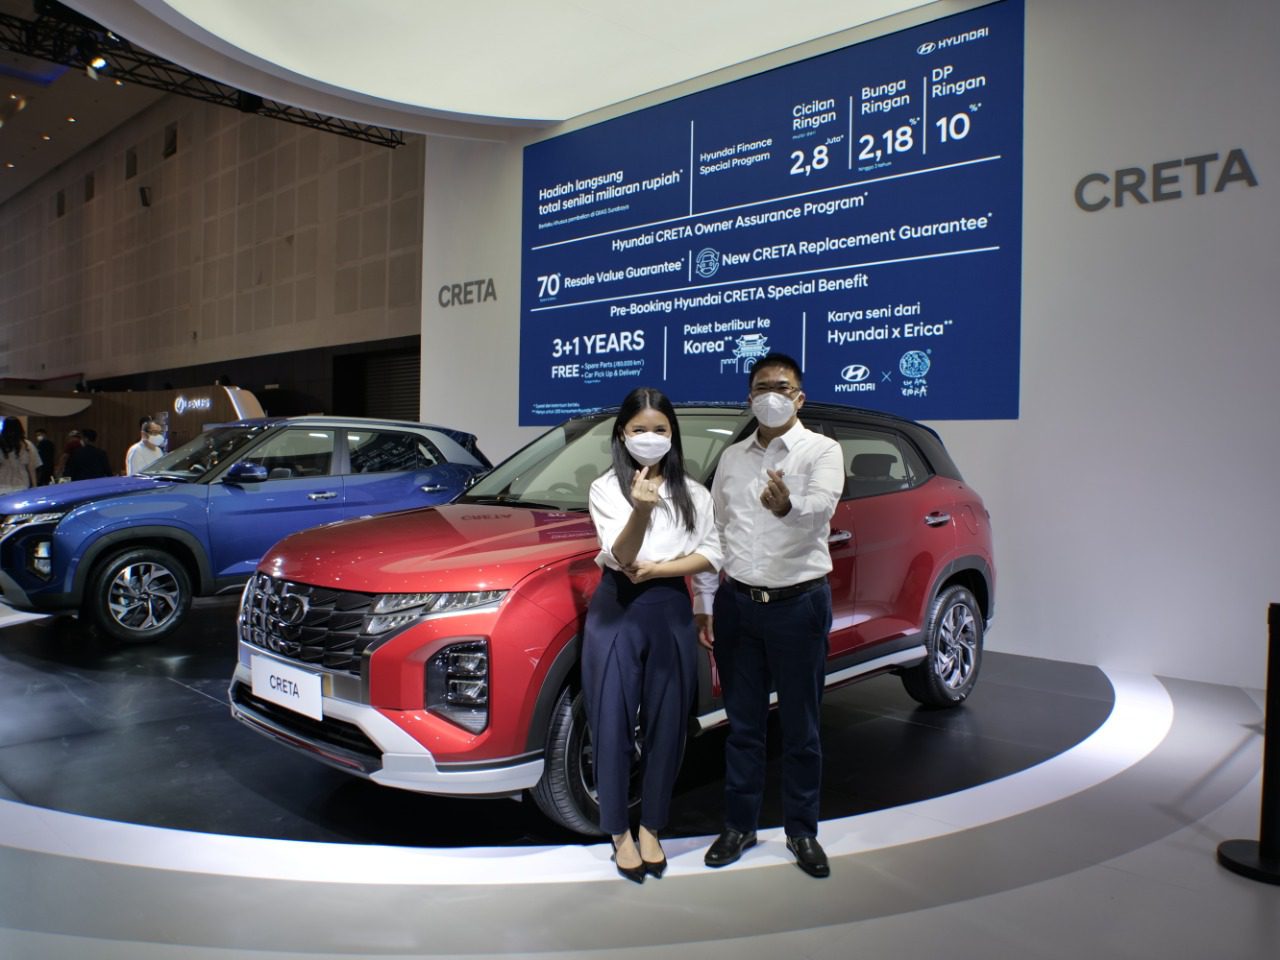 CRETA, SUV Hyundai Buatan Indonesia GIIAS 2021 Surabaya